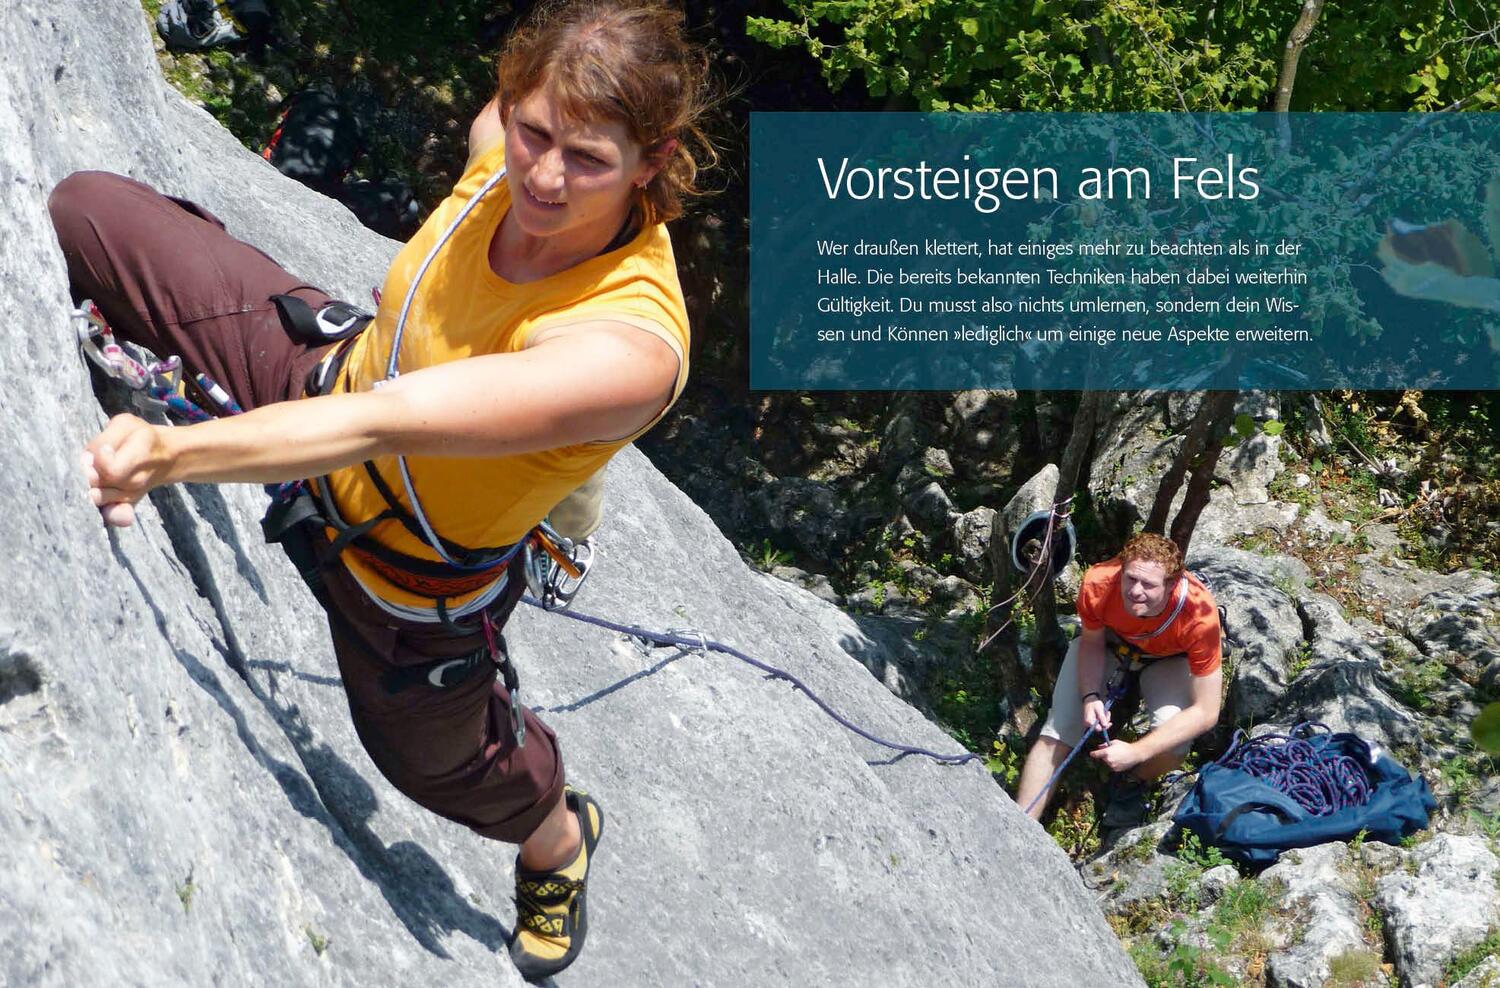 Bild: 9783763360963 | Outdoor-Klettern | Das offizielle Lehrbuch zum DAV-Kletterschein